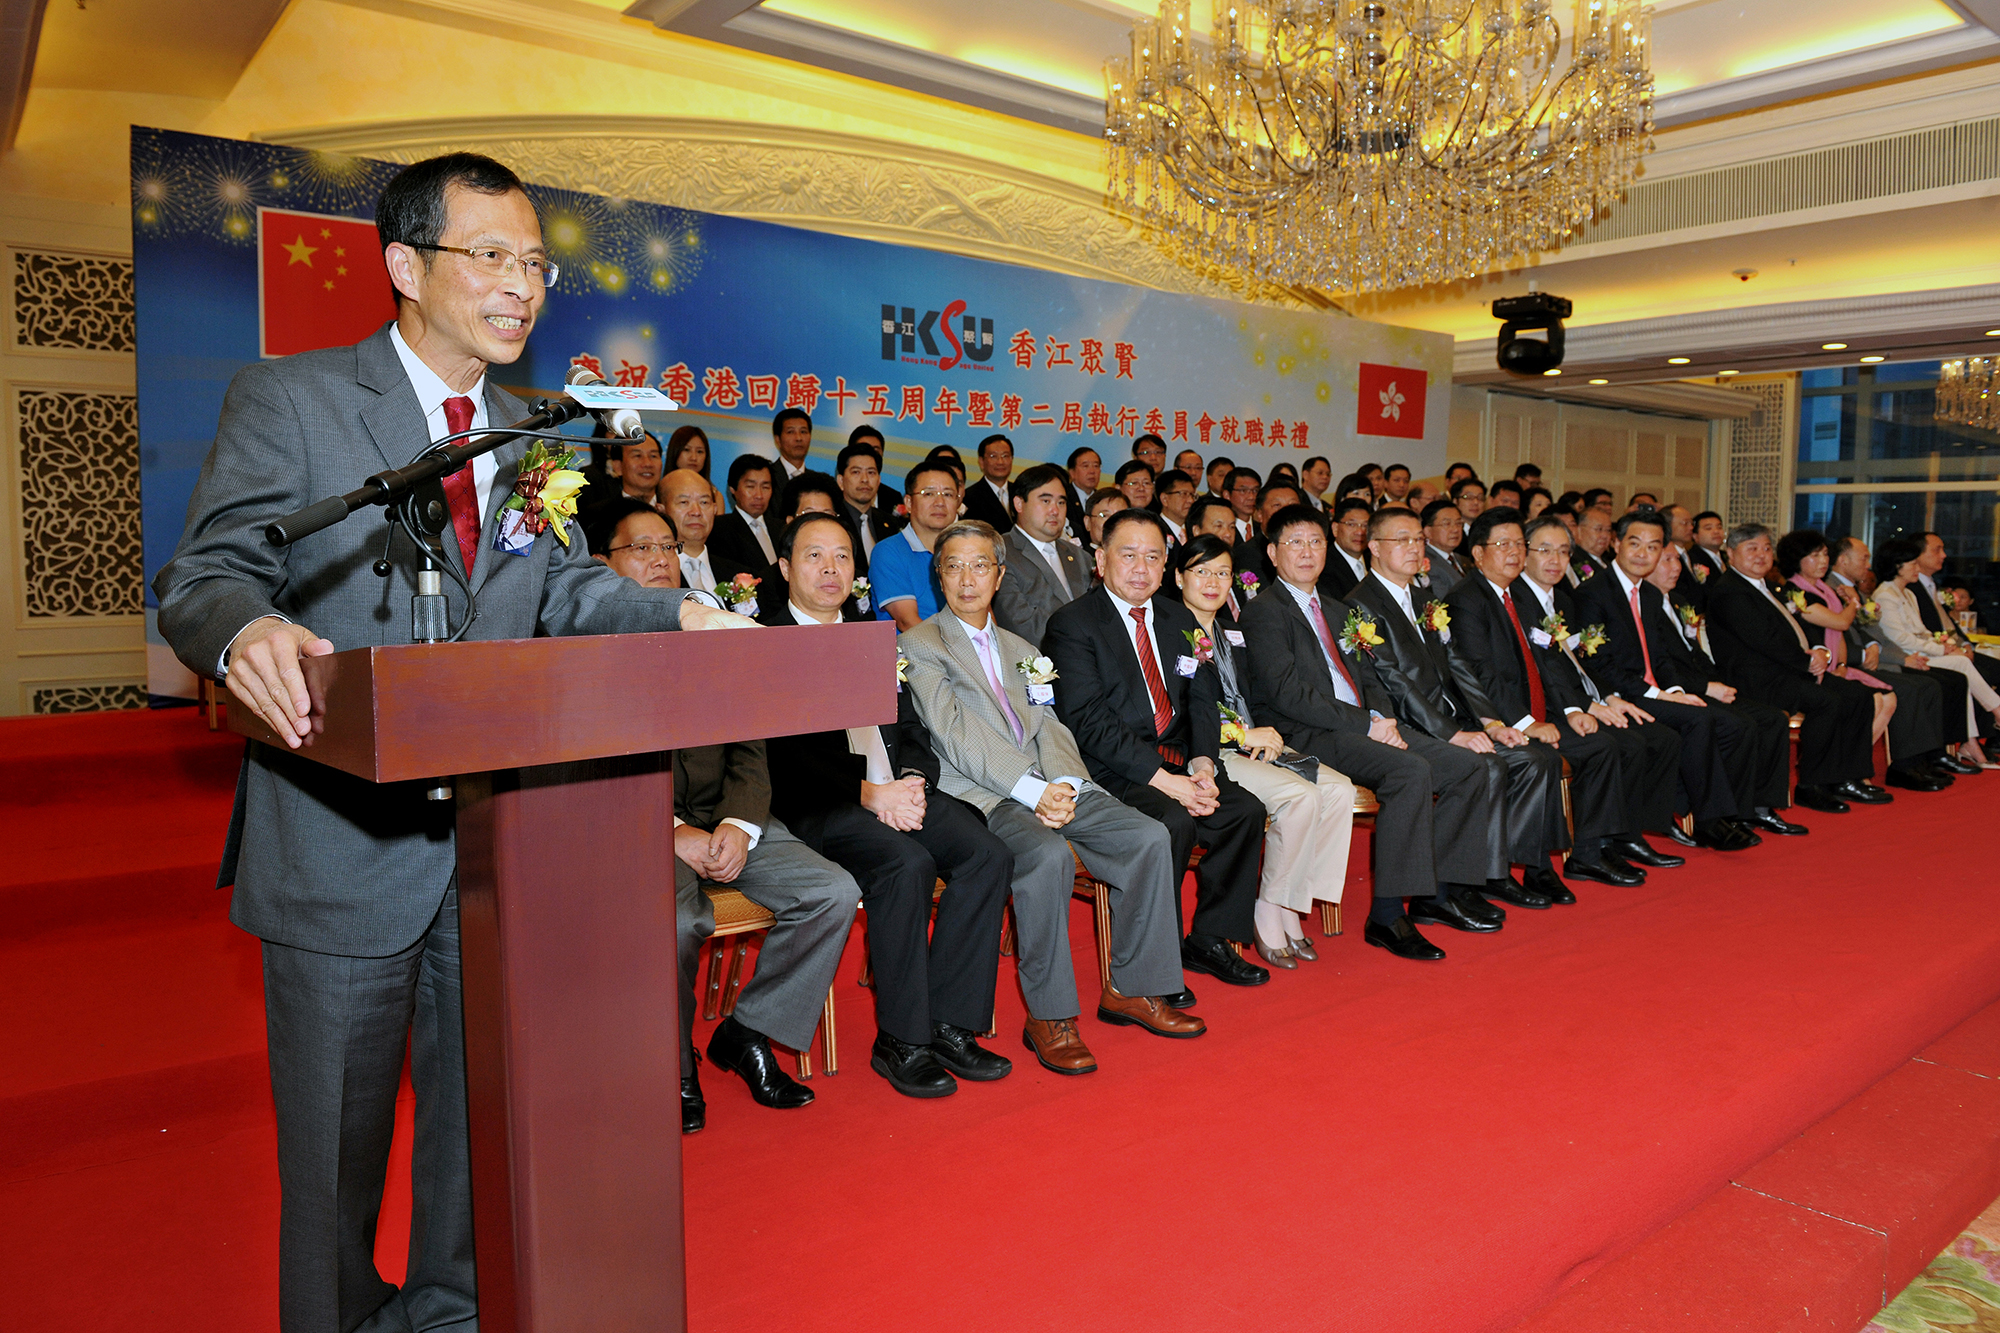 慶祝香港回歸十五周年暨第二屆執行委員會就職典禮